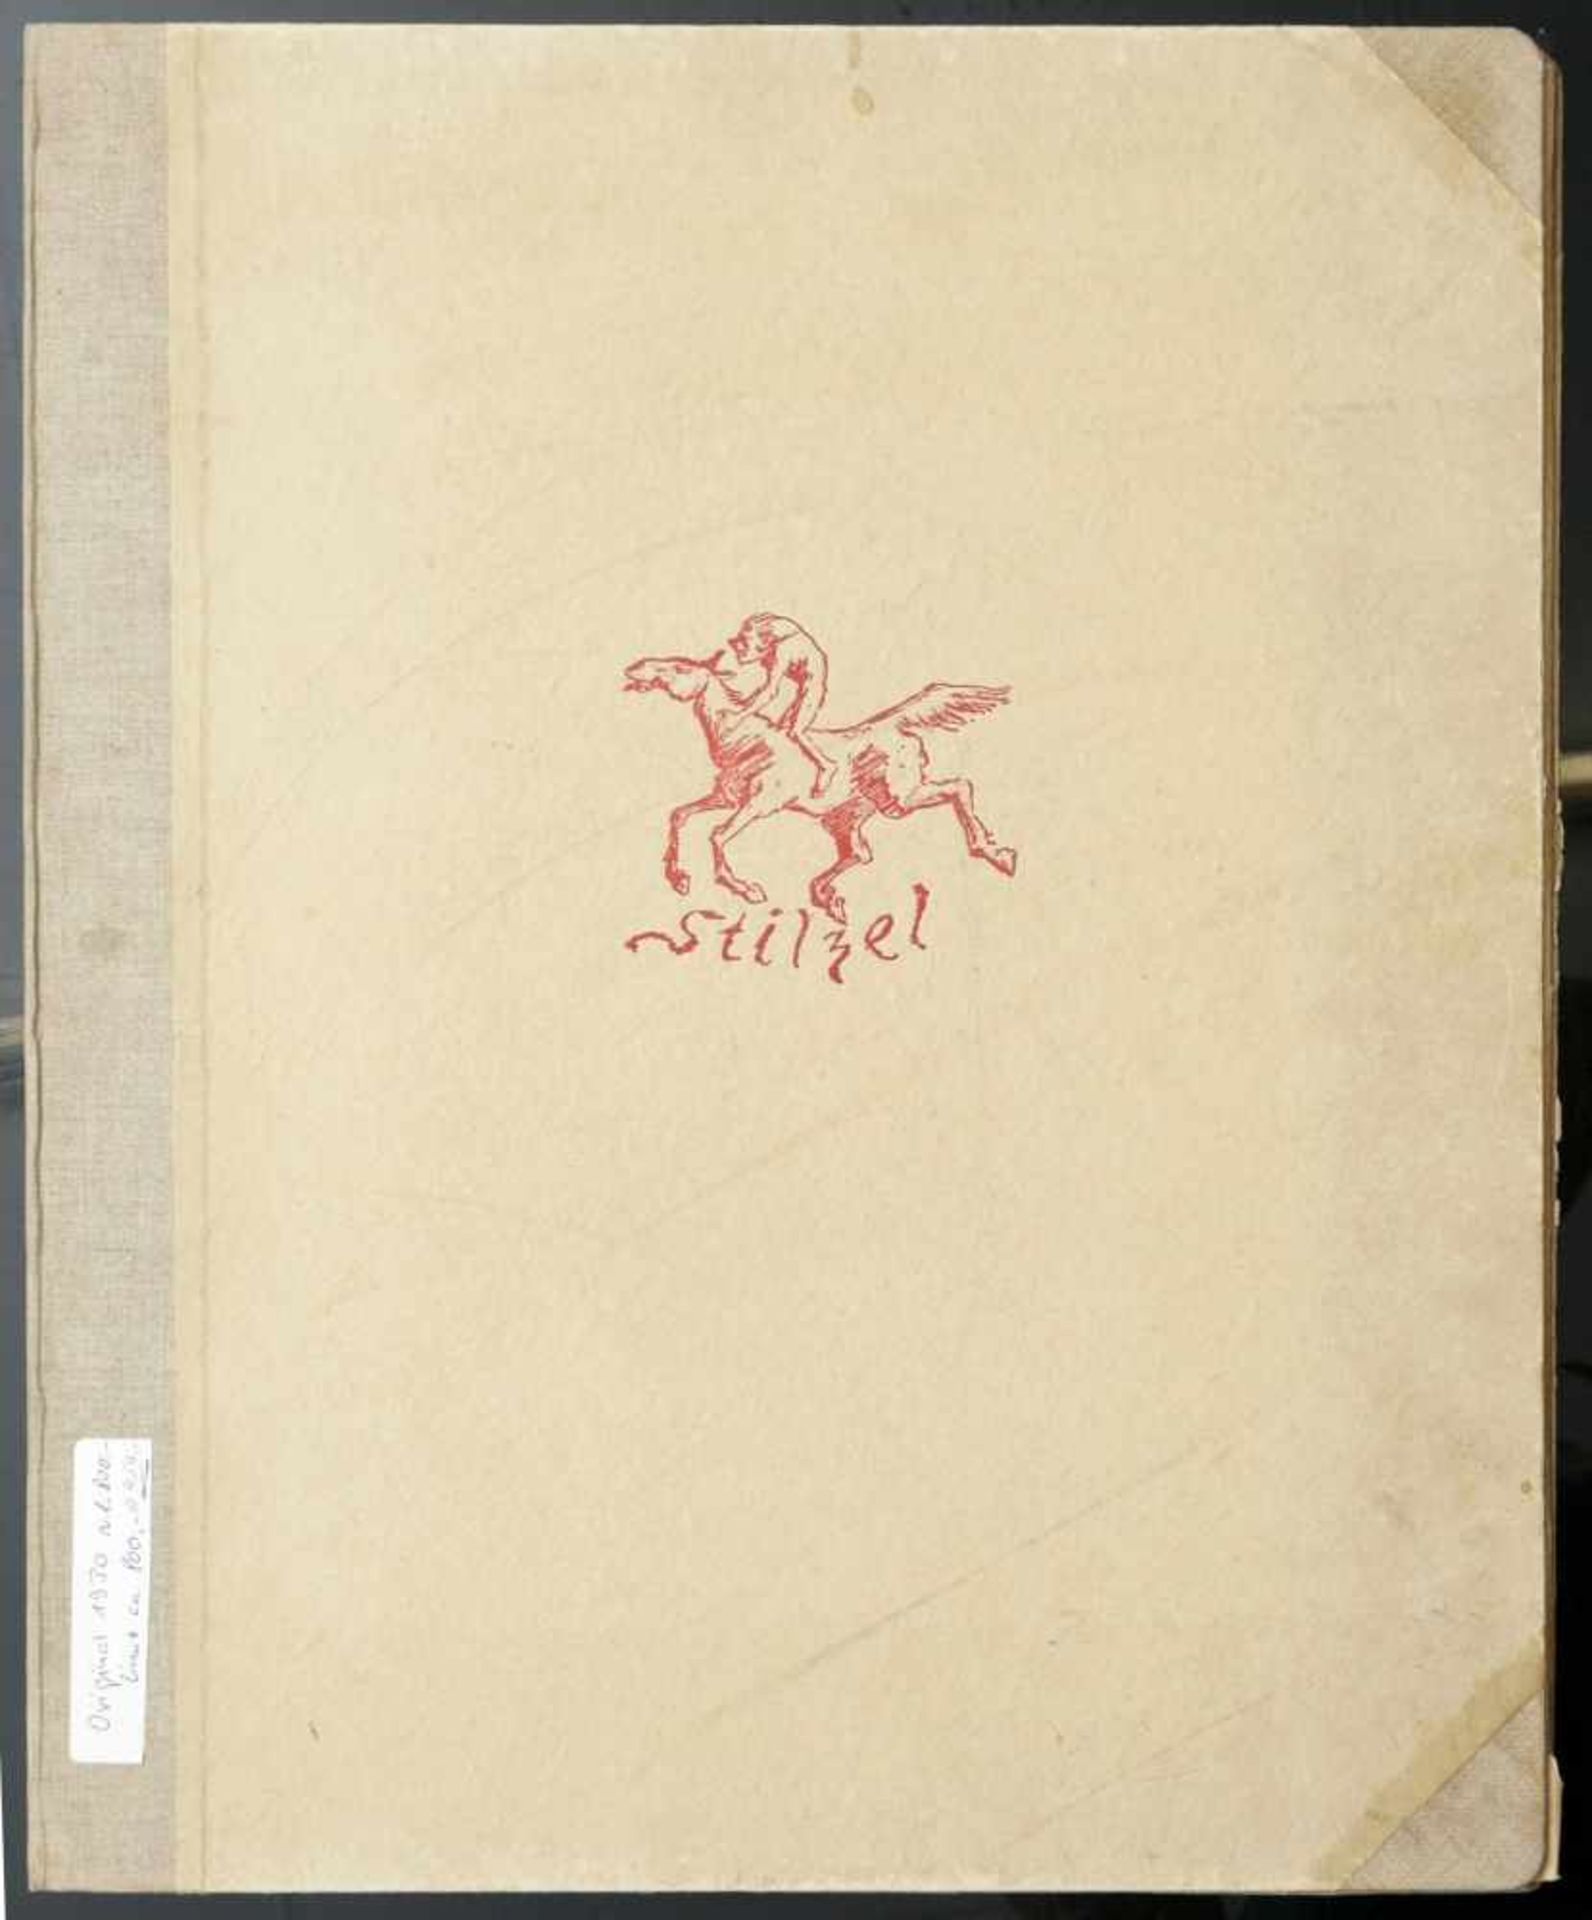 Kubin, Alfred (1877-1959) - Mappe Stilzel Original 1930Selten erhaltene originale Mappe mit elf